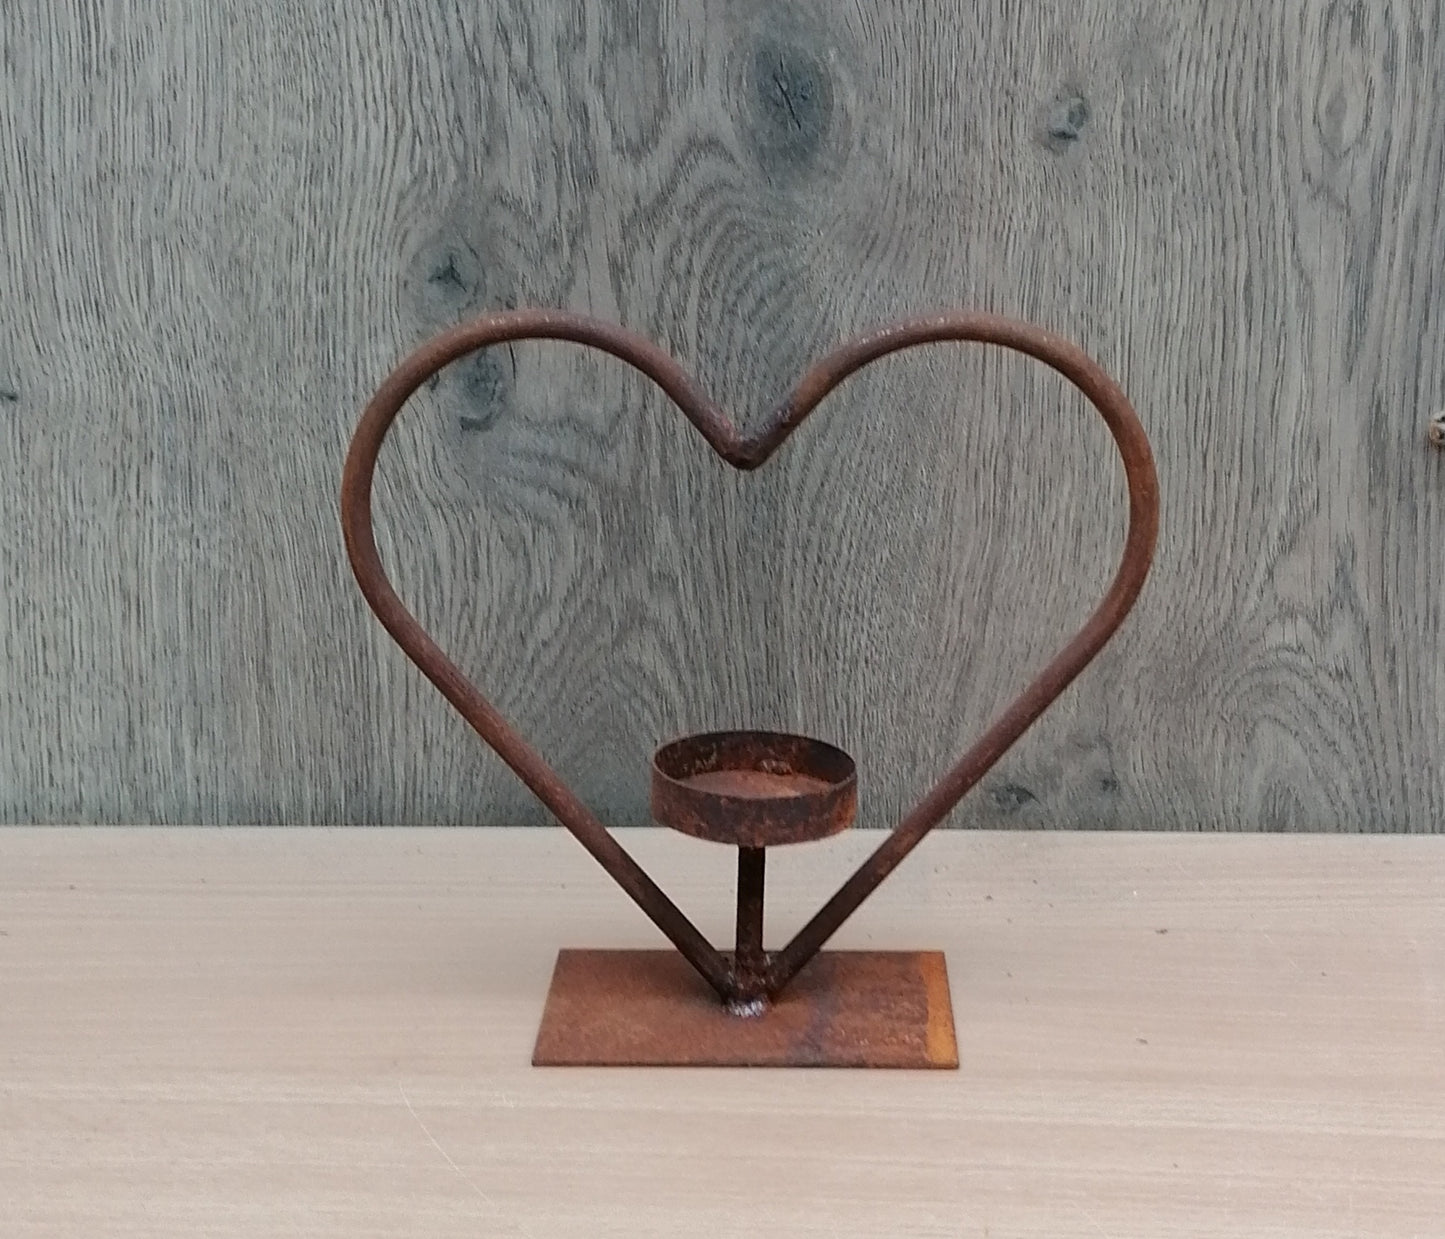 NEU !! Herz auf Platte 25 x 25 cm aus Metall in Edelrost Hochzeit Liebe Muttertag Geschenk Valentinstag